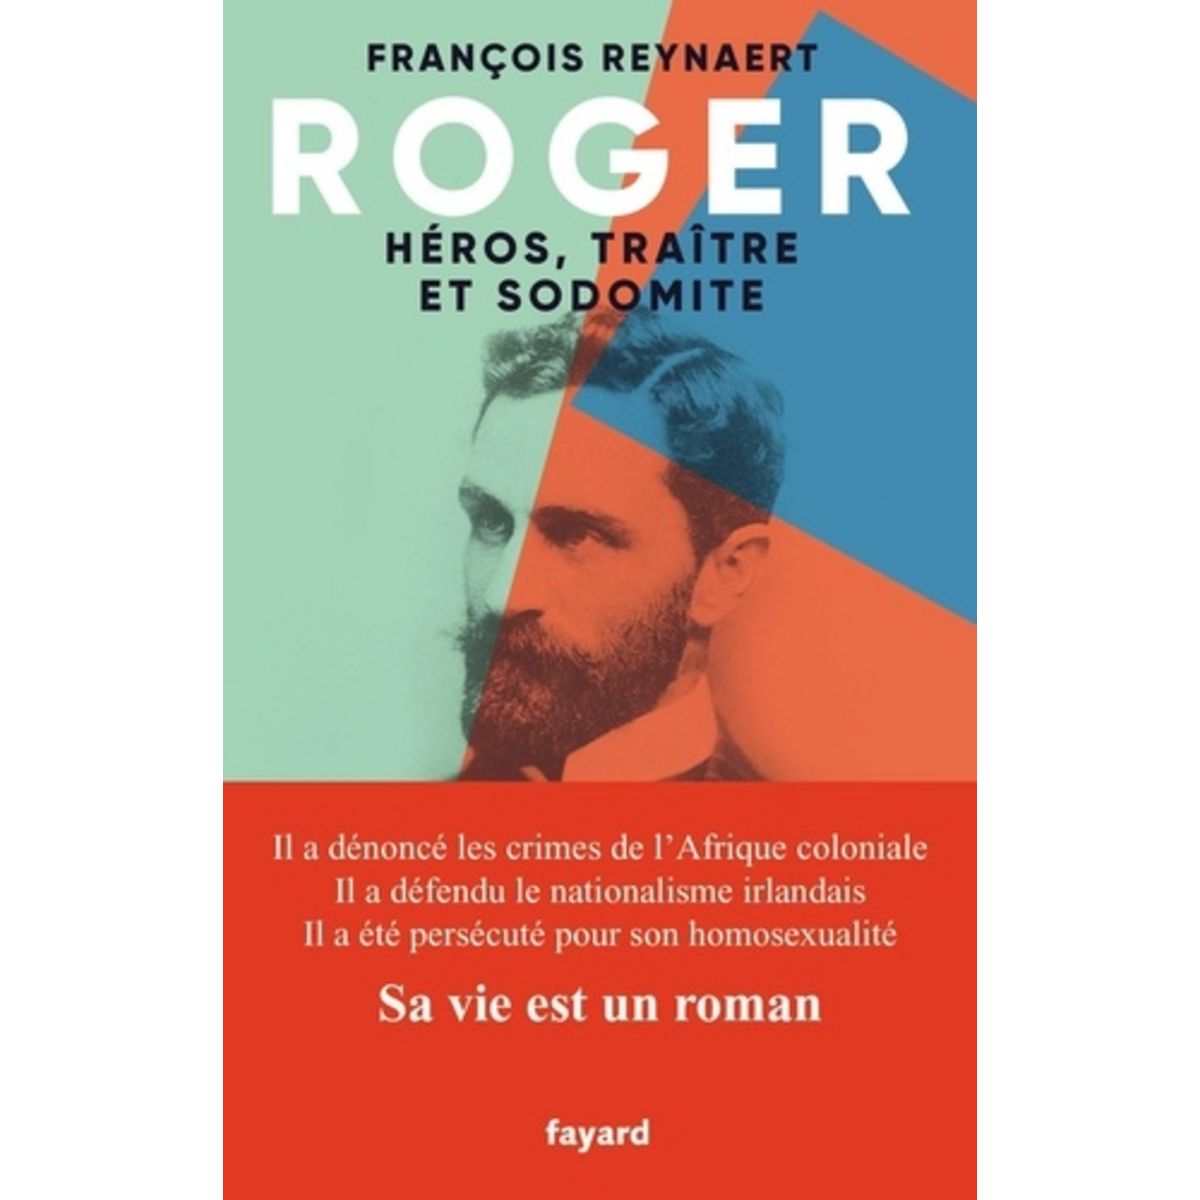  ROGER, HEROS, TRAITRE ET SODOMITE, Reynaert François